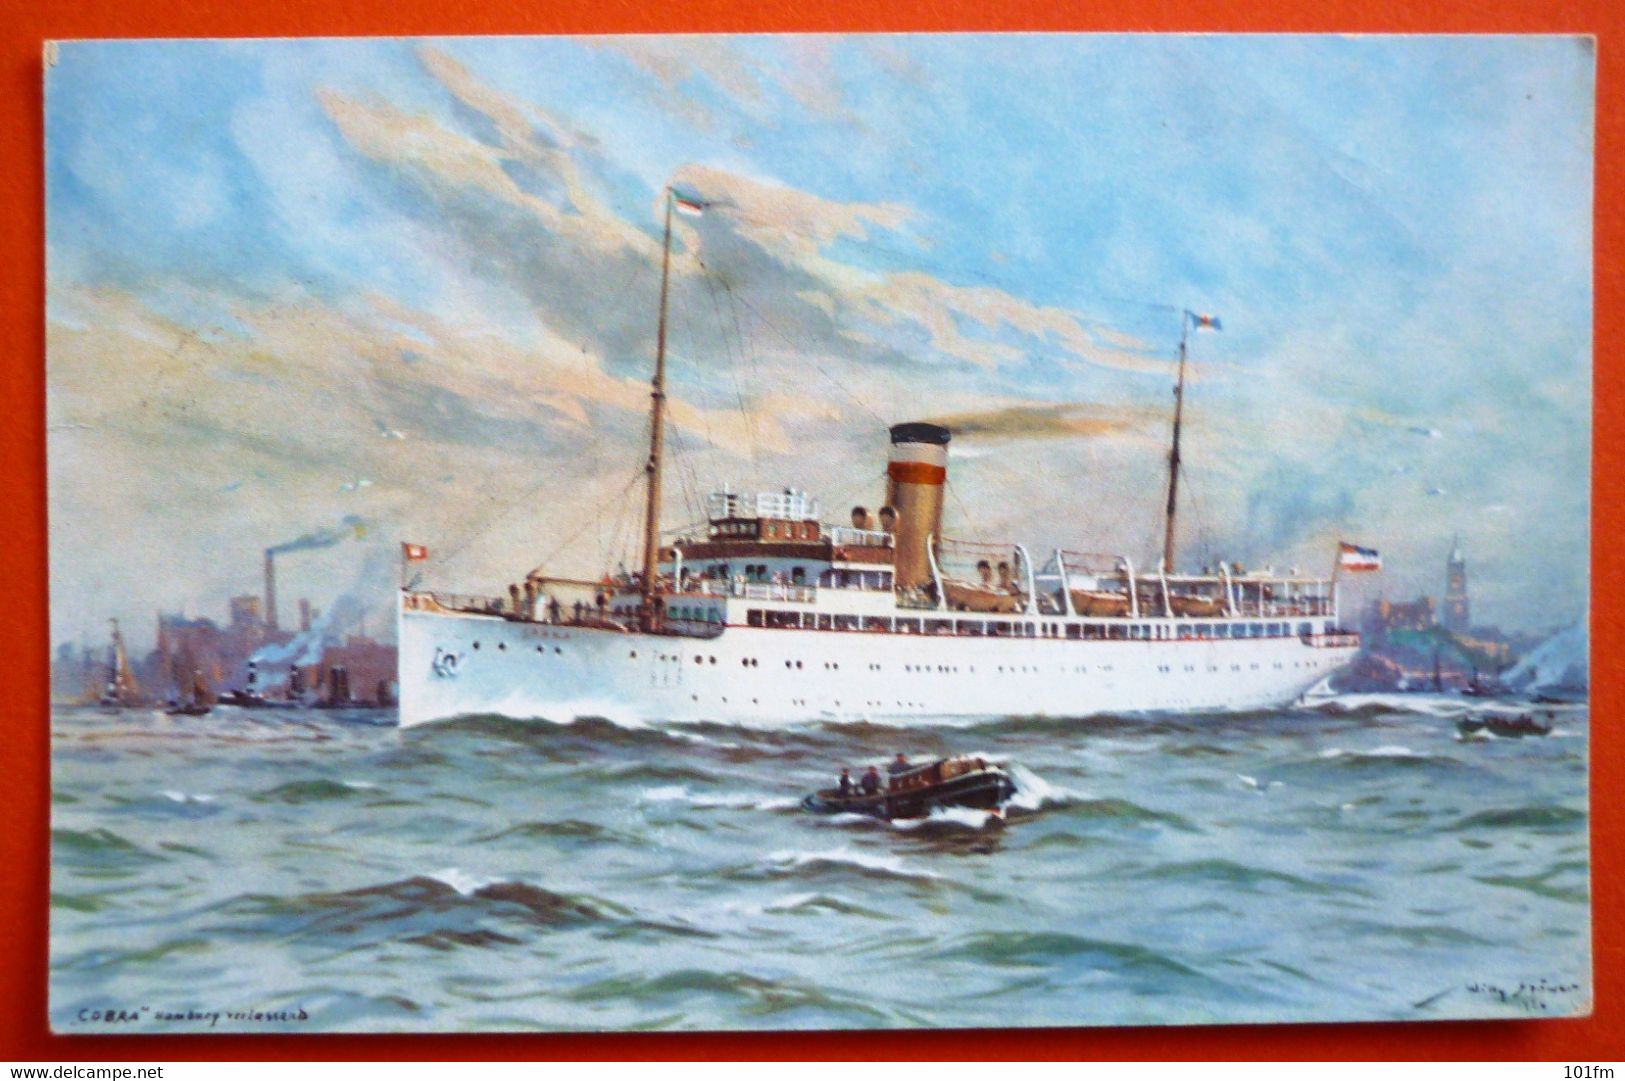 TURBINEN - SCHNELLDAMPFER "COBRA" - AUF HOHER SEE 6.JUNI.1932 - Steamers